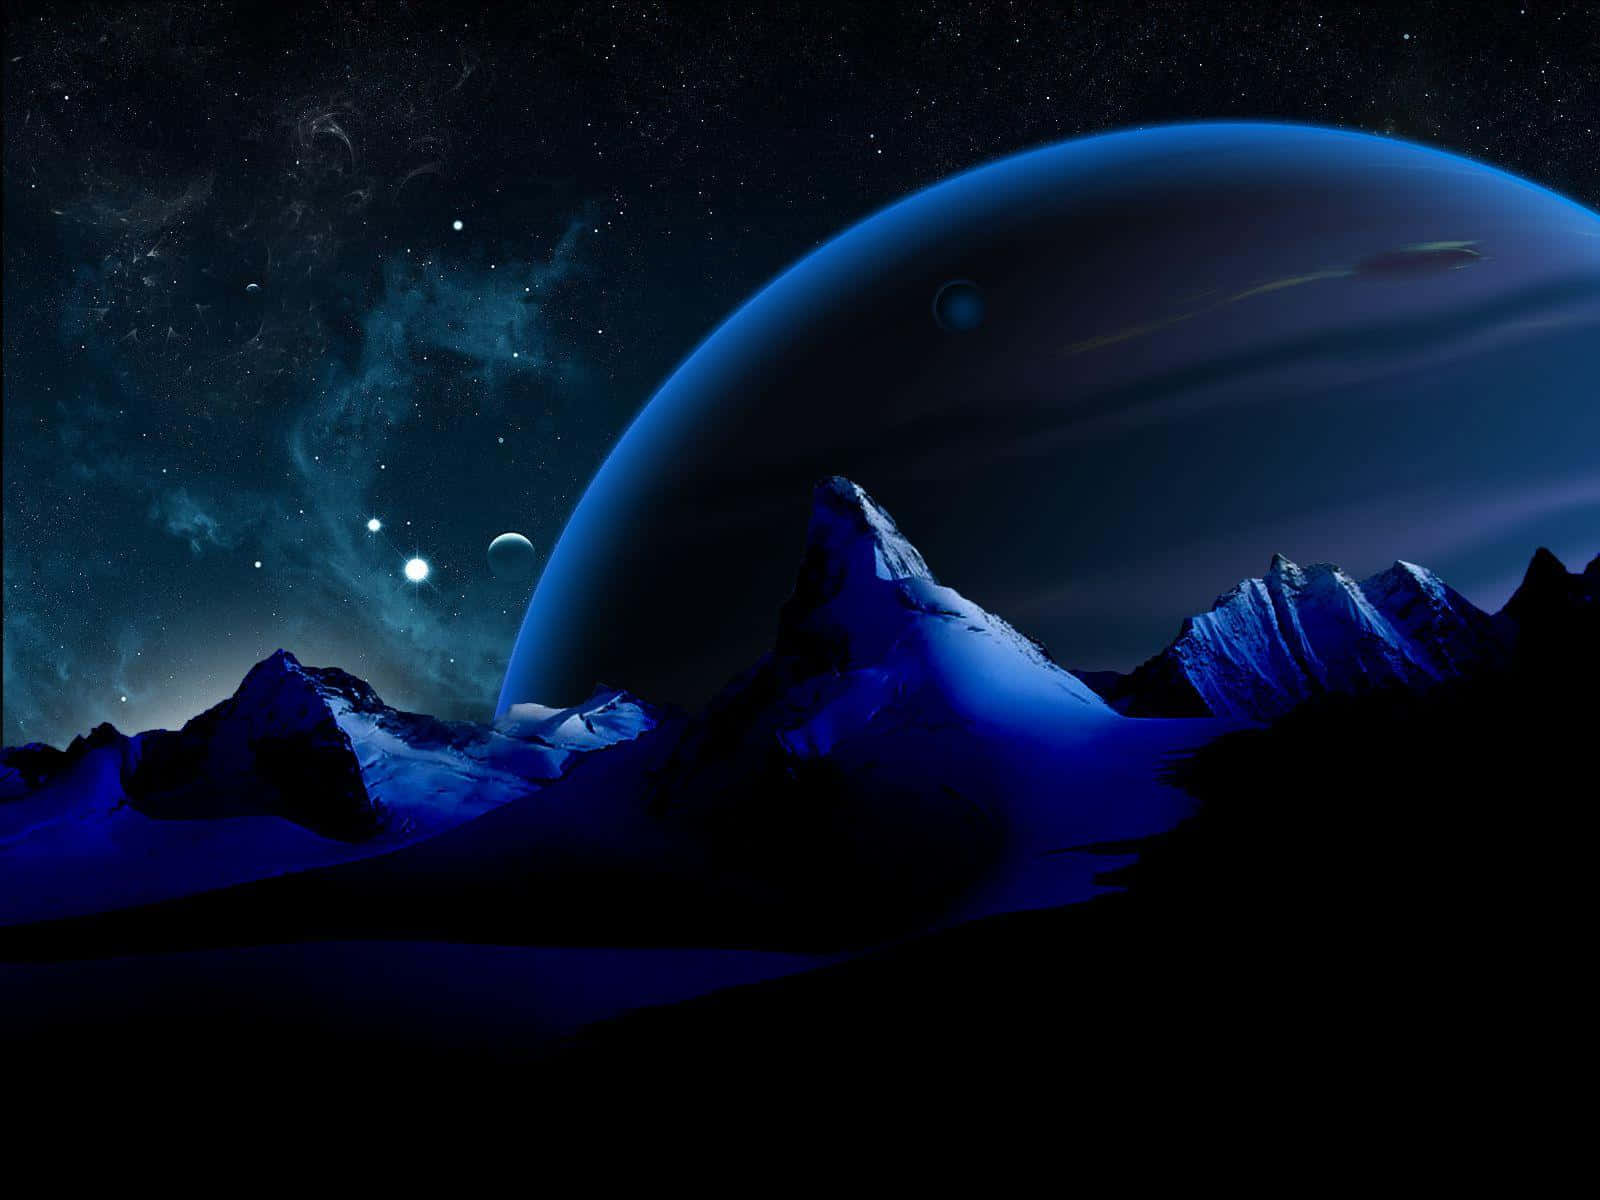 Förundradig Över Skönheten Hos Neptunus - Den Åttonde Planeten Från Solen!